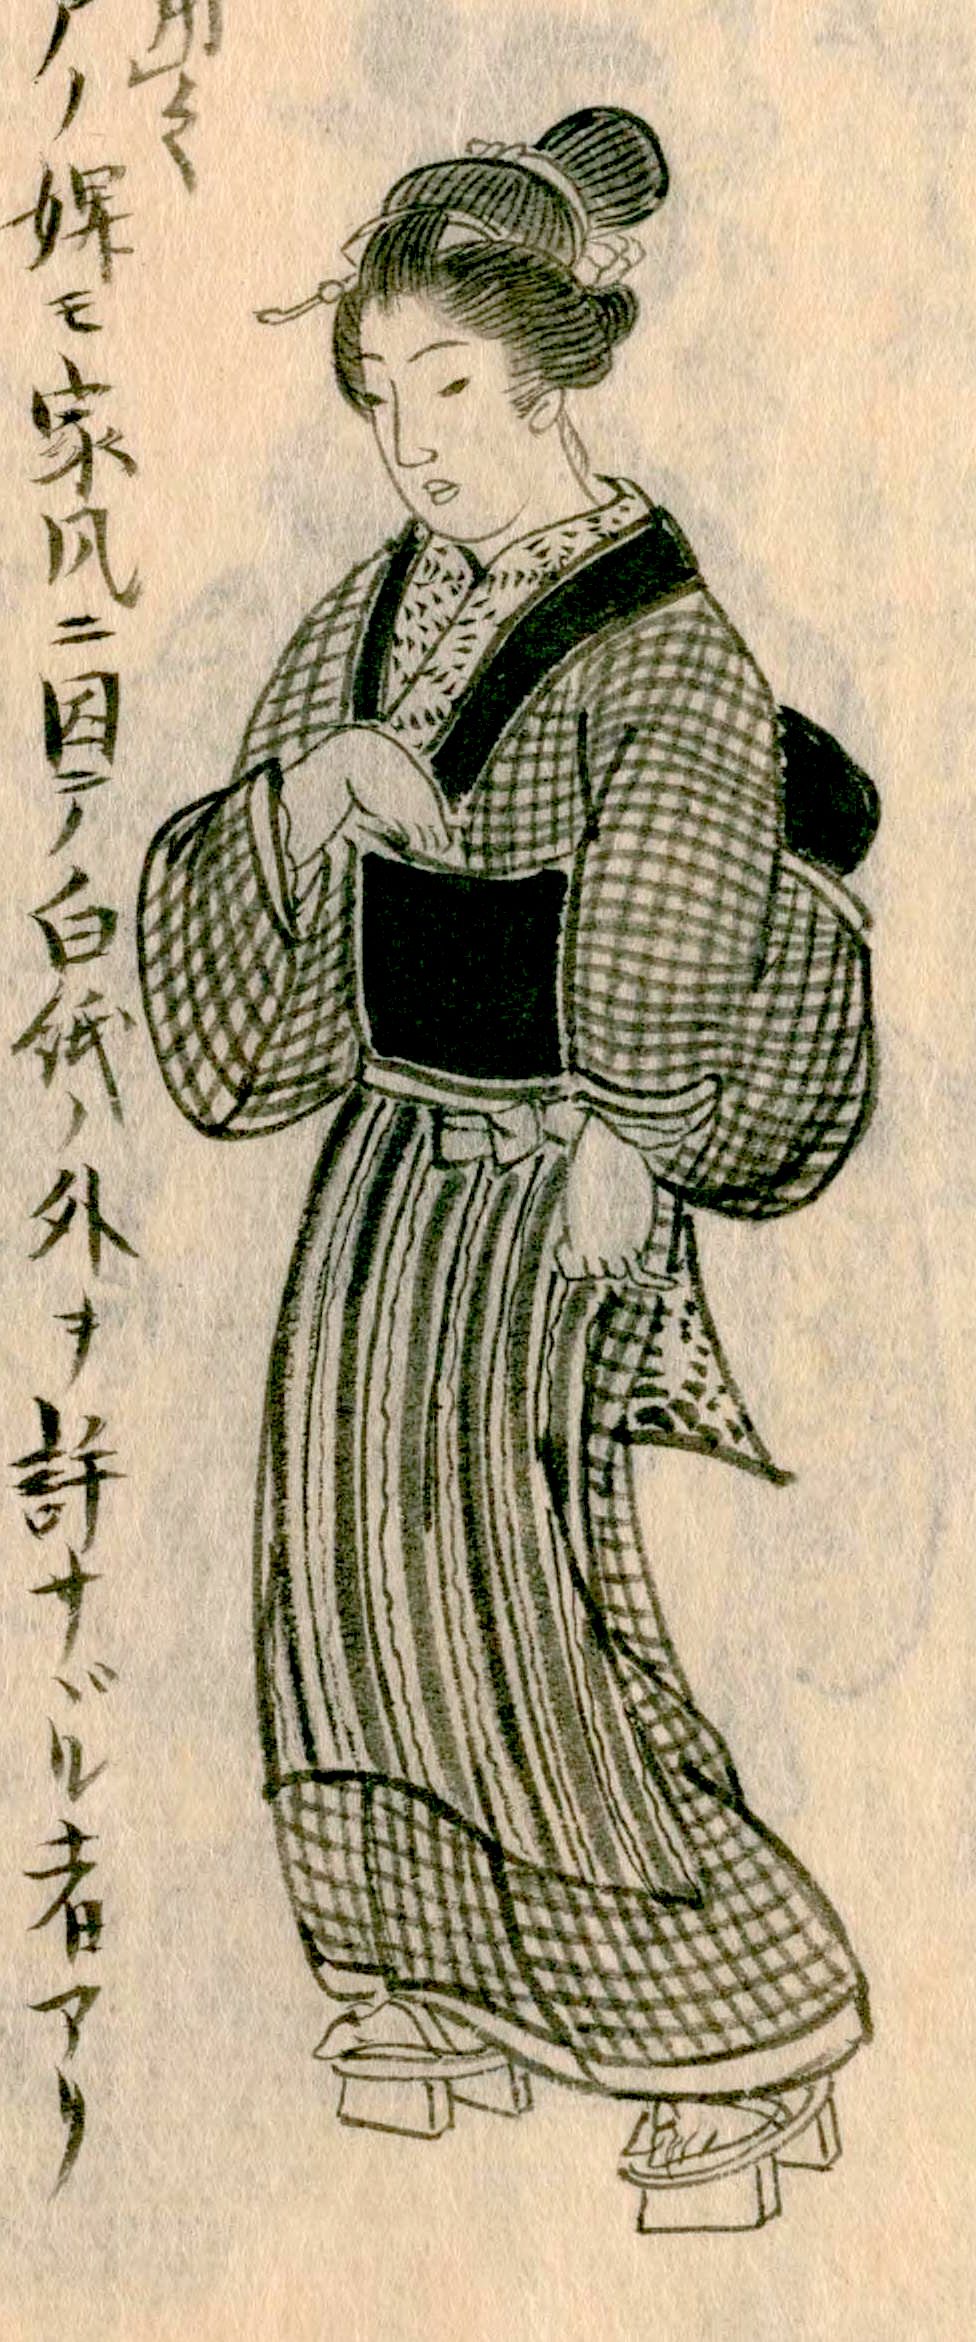 El atuendo diario de una mujer joven. De Morisada mankō (Manuscrito de Morisada).